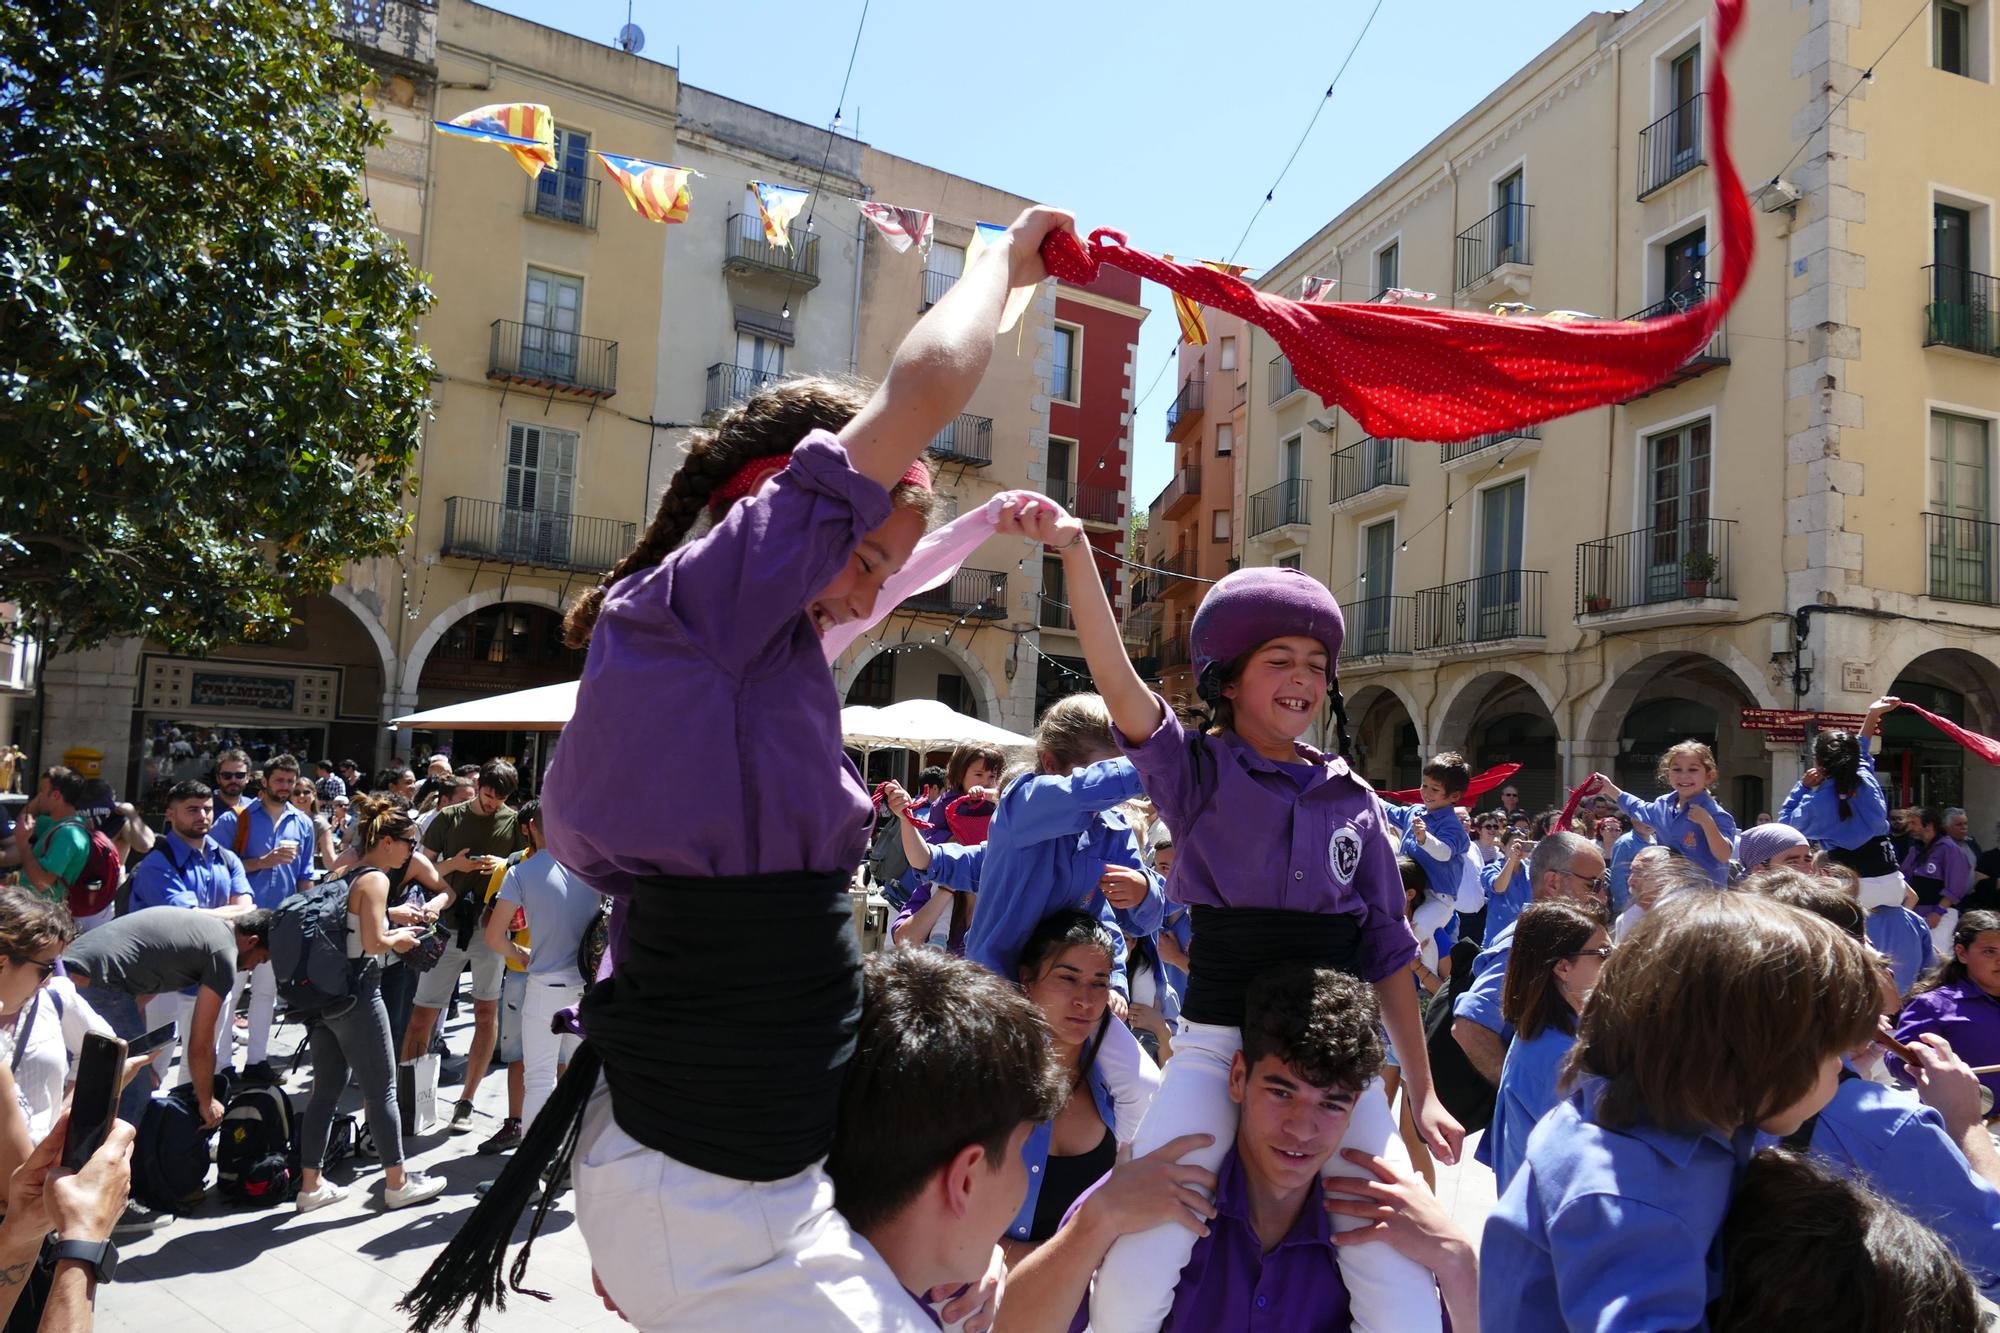 La plaça es tenyeix de colors amb la Diada Castellera de Santa Creu